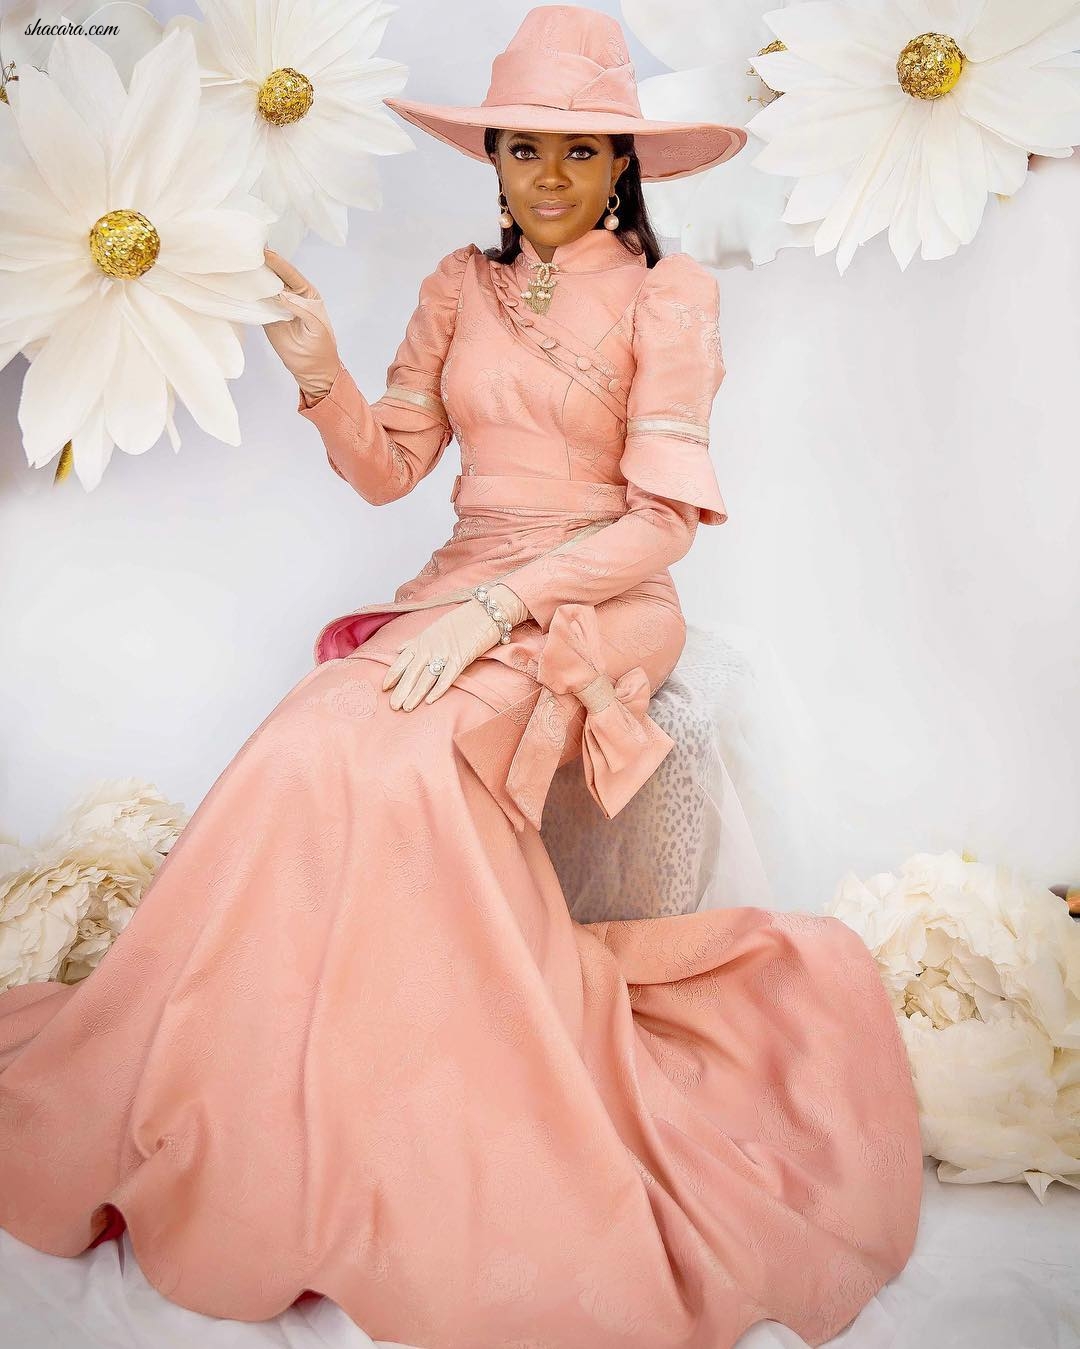 Omoni Oboli Channels Fairytale Glam In High Fashion Birthday Photo Shoot